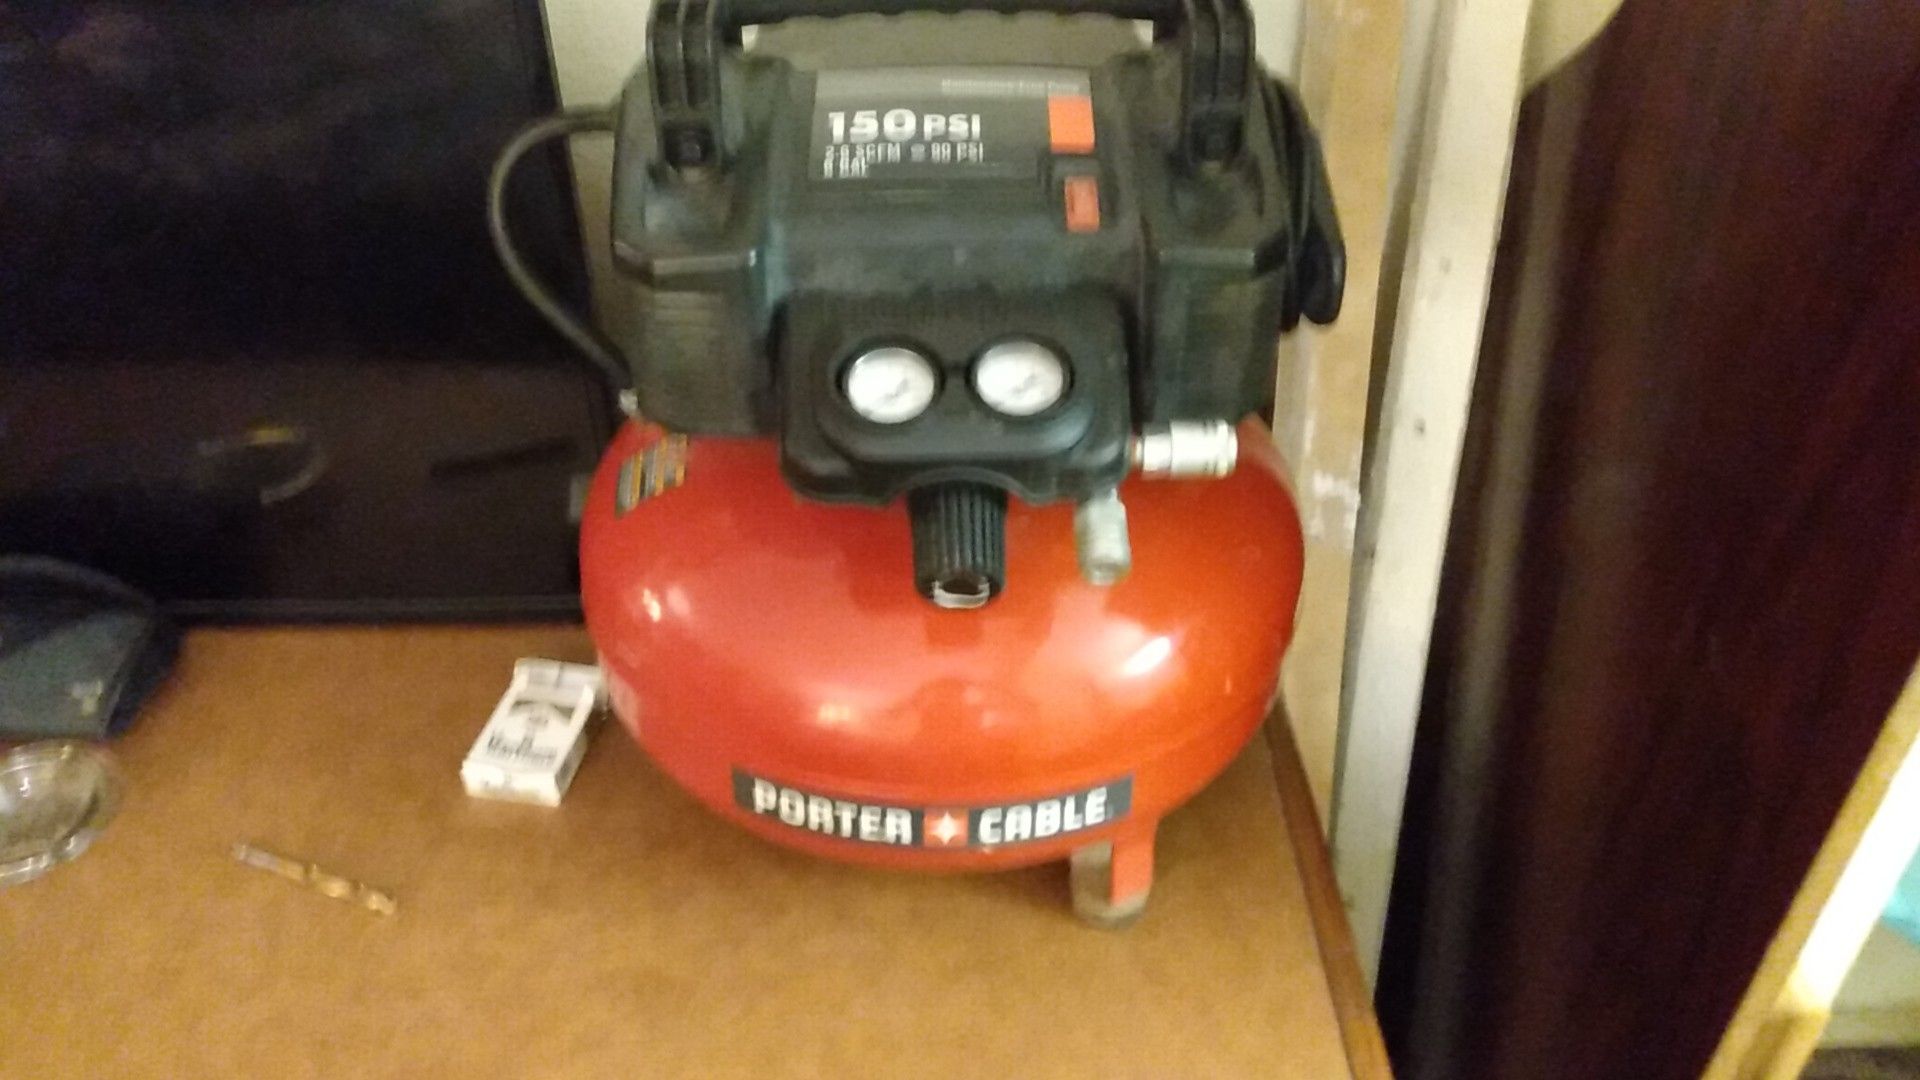 Porter-Cable 150 psi compressor